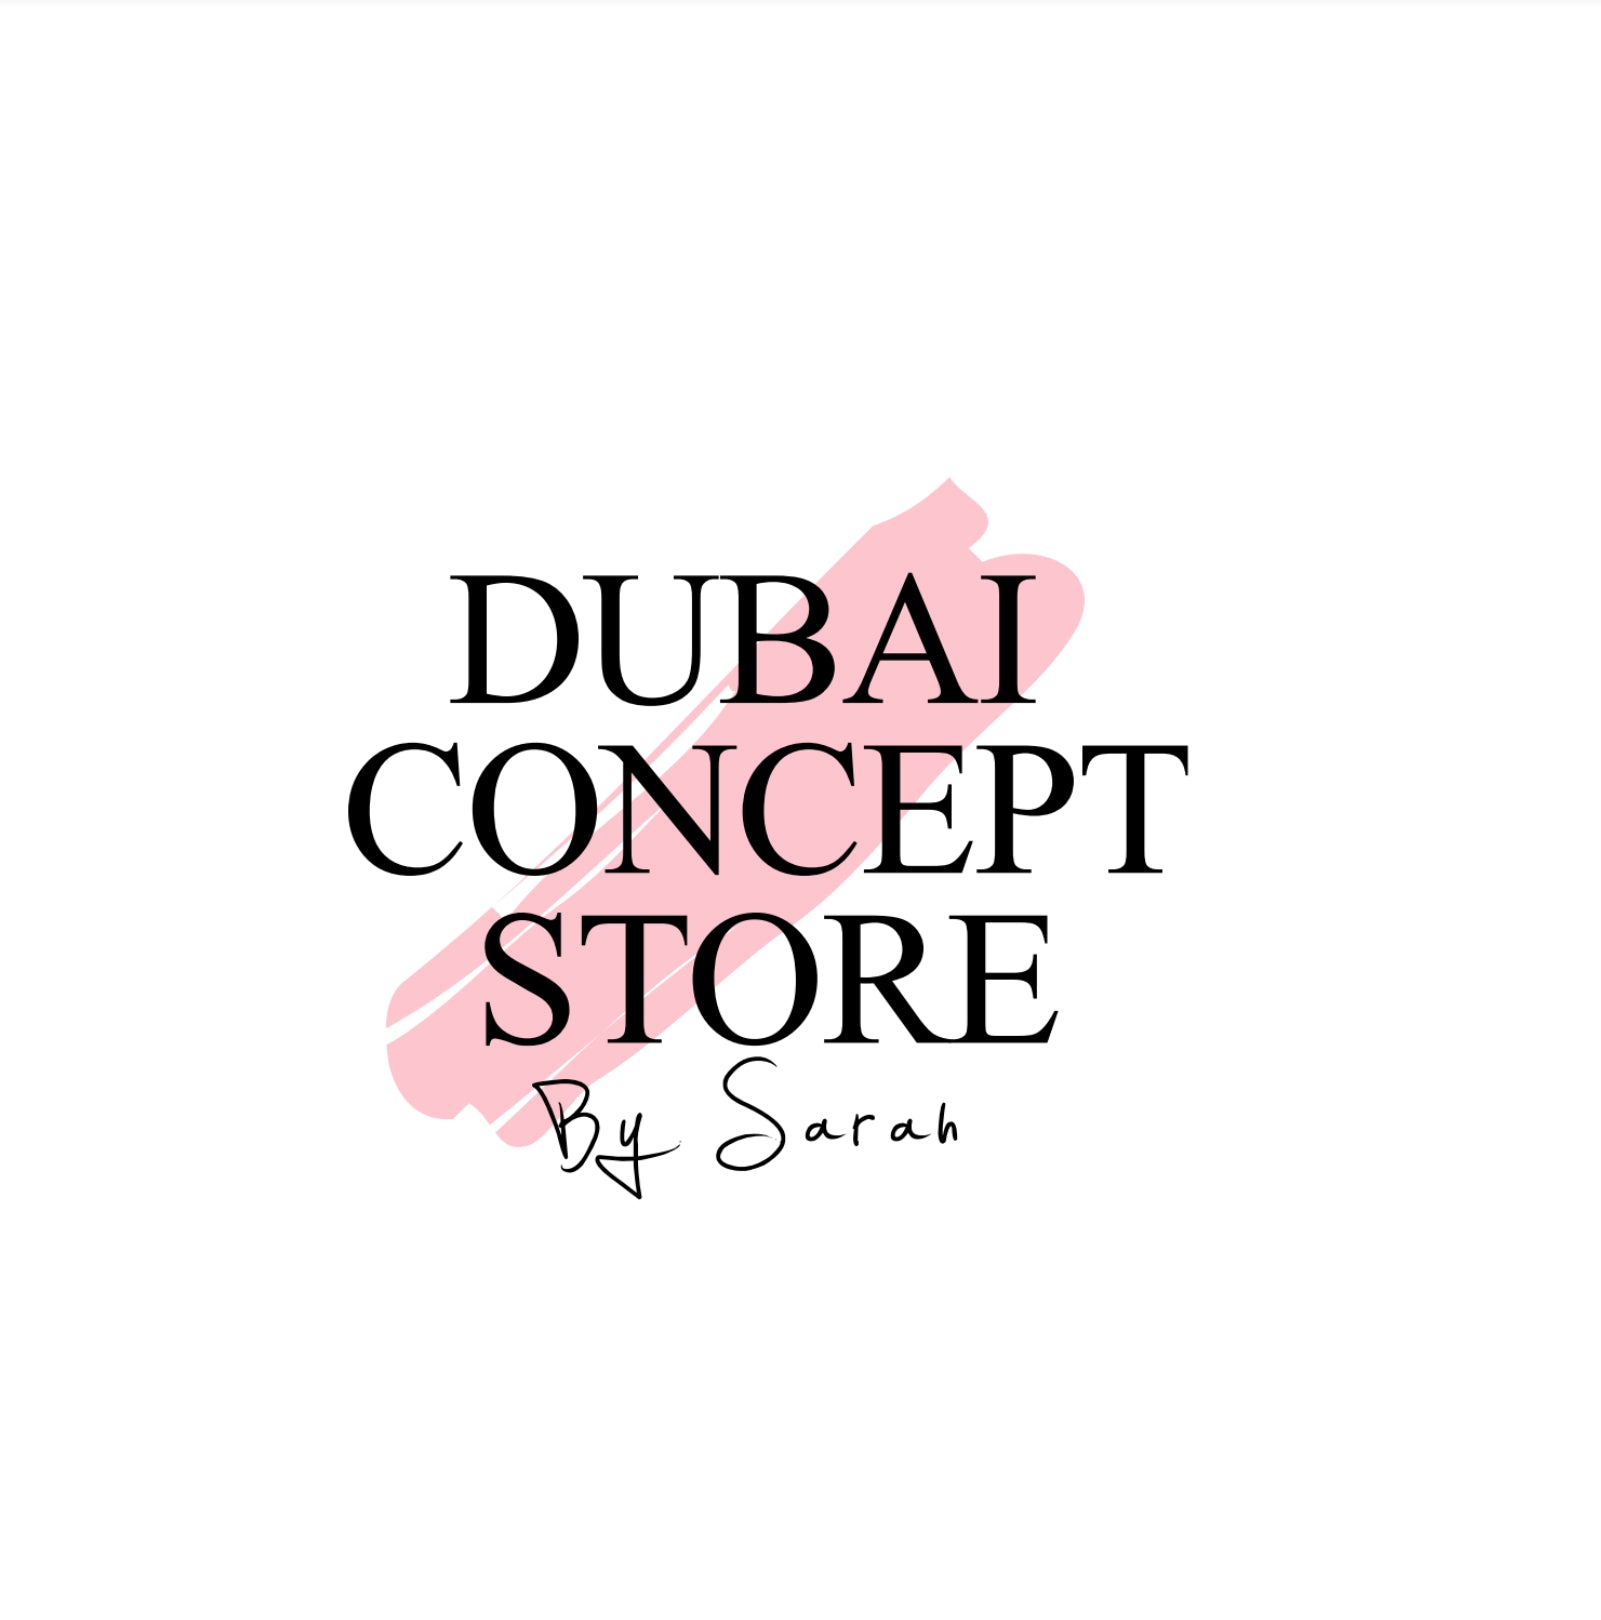 Dubai Concept Store